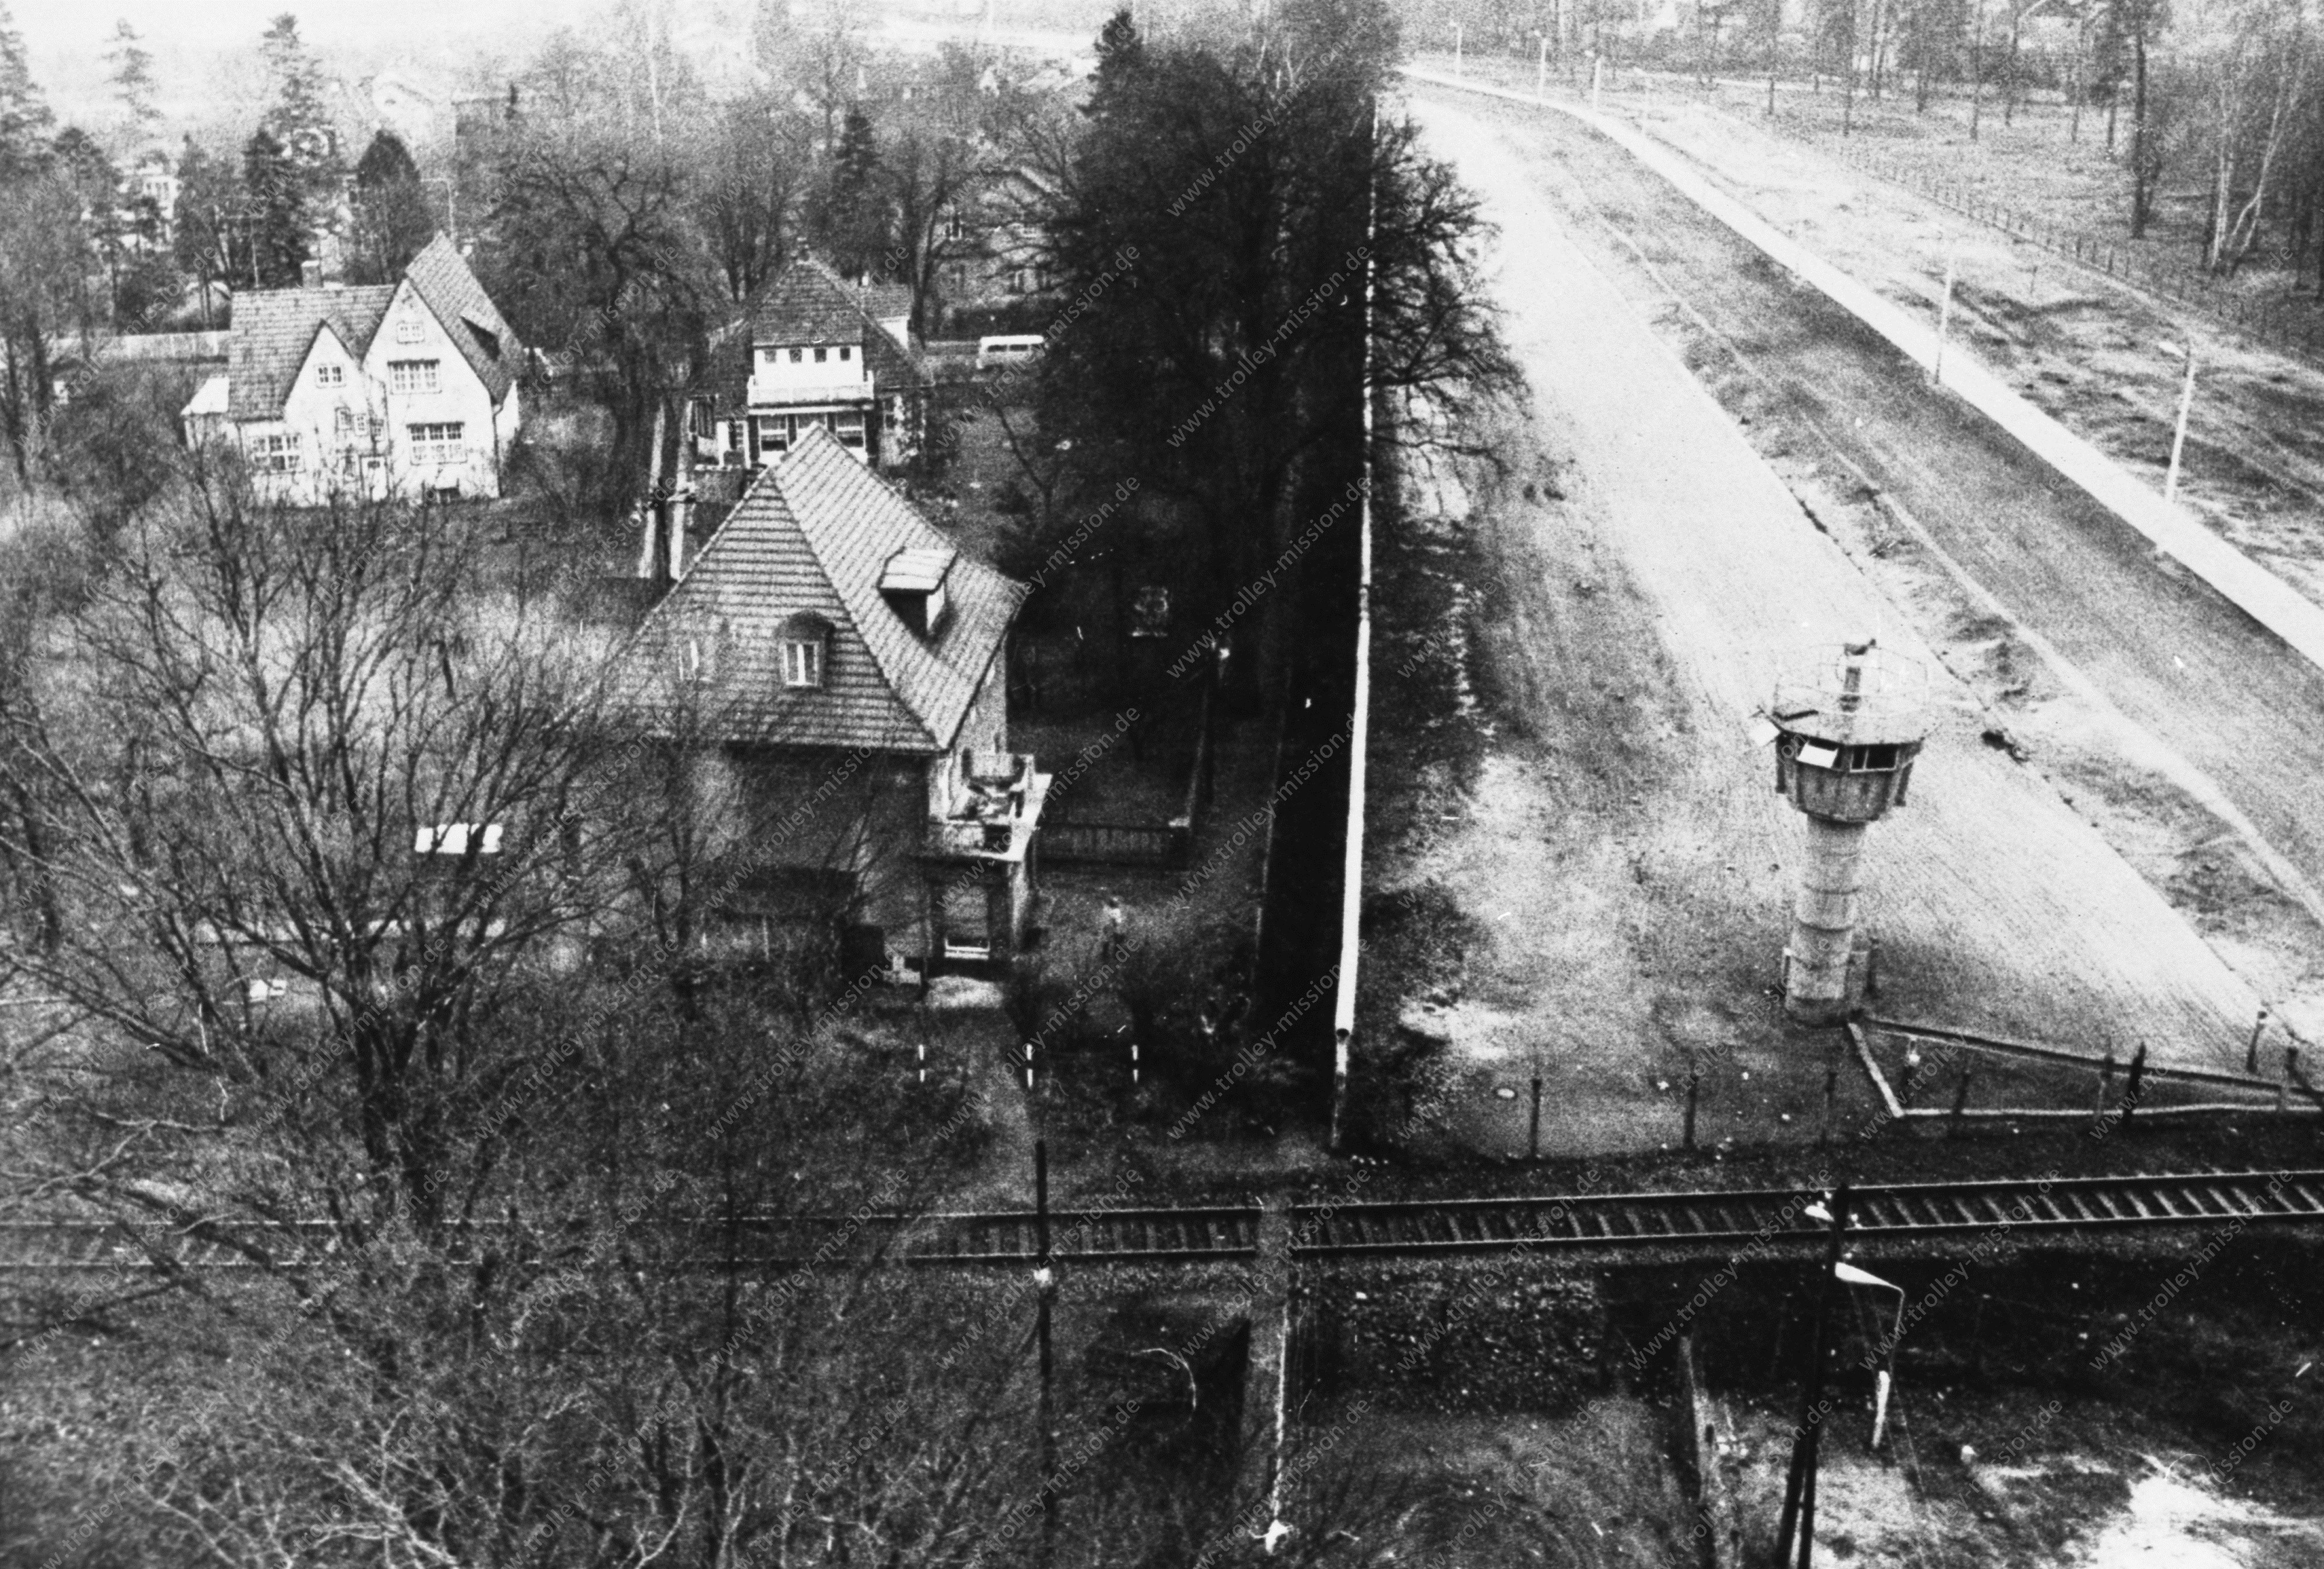 Luftbild vom DDR Grenzturm in der Nähe der Exklave Steinstücken an der Steinstraße und Bernhard-Beyer-Straße